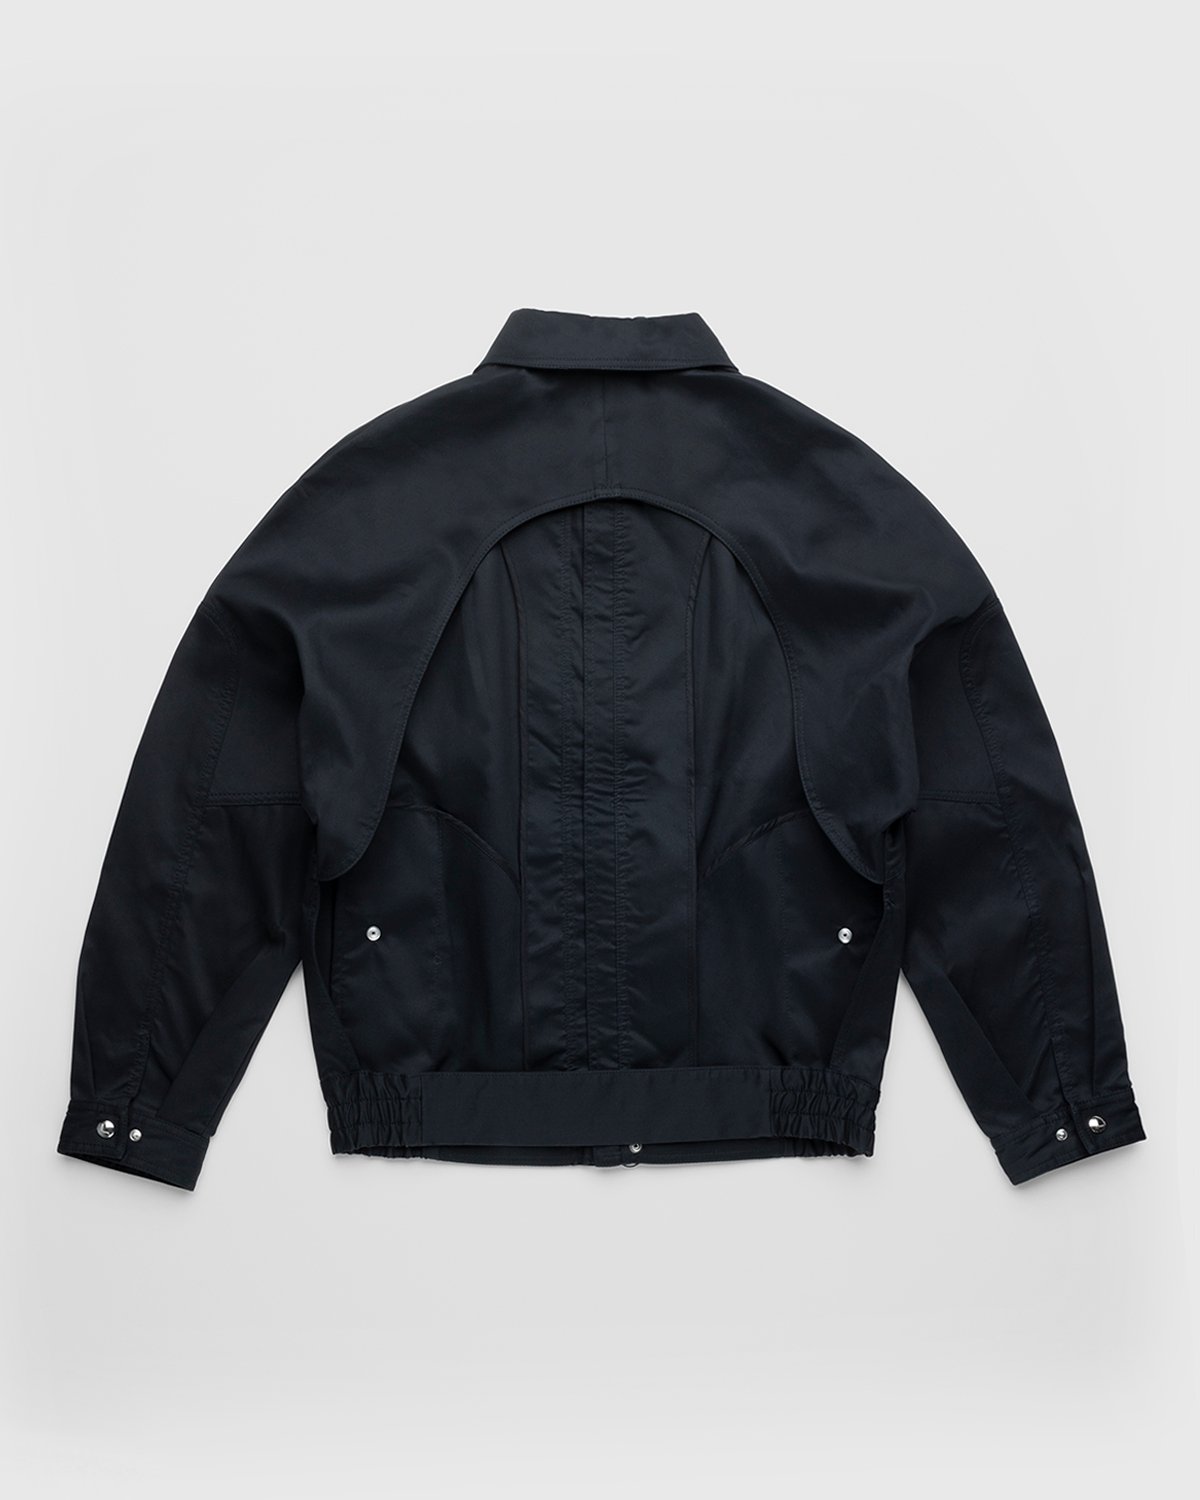 Lourdes New York - Backless Jacket Black - Clothing - Black - Image 2